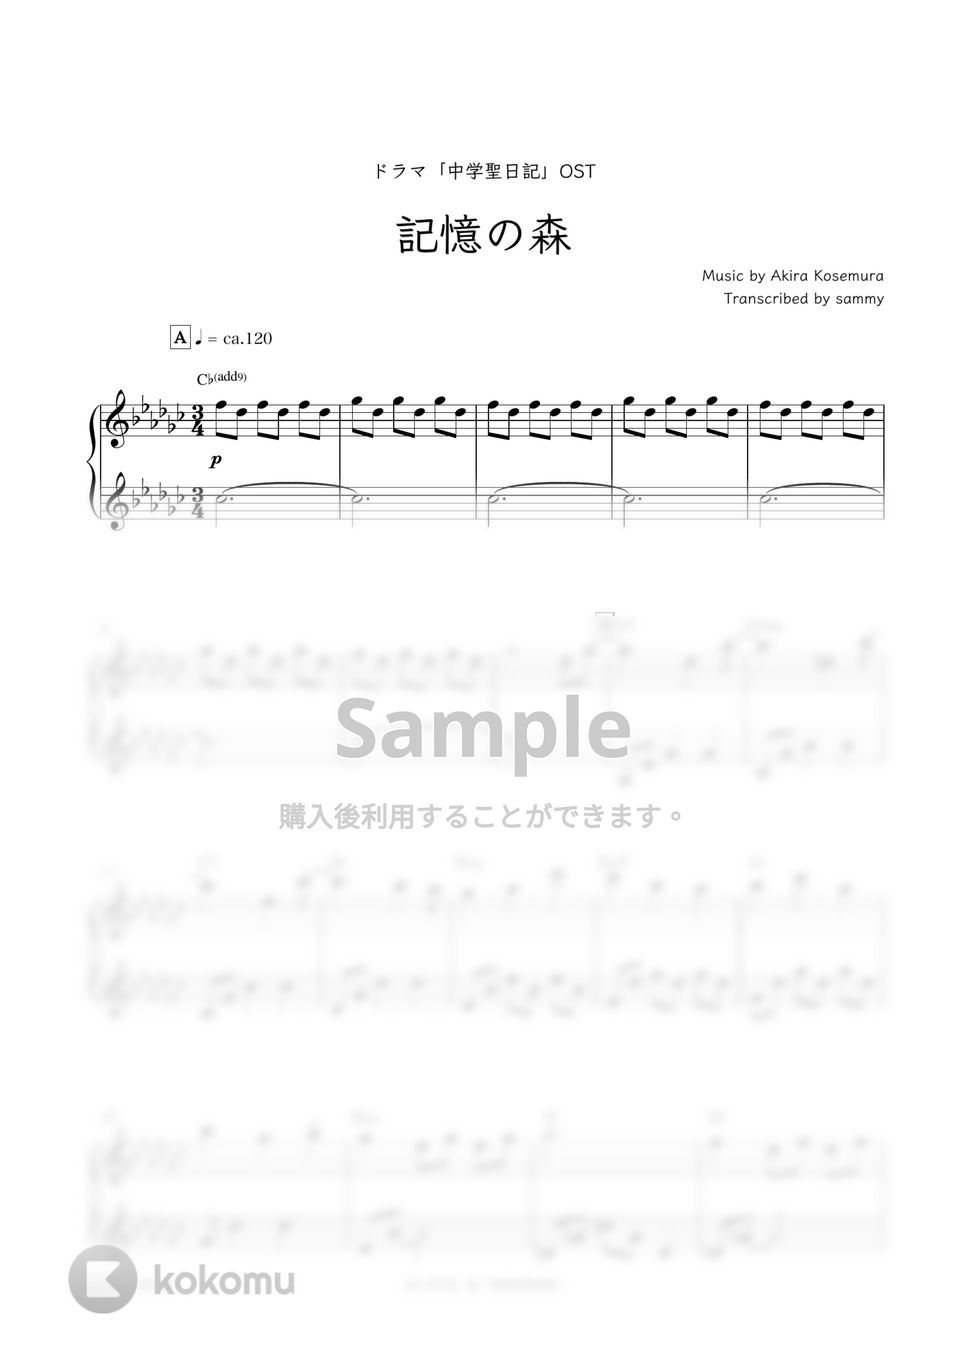 ドラマ『中学聖日記』OST - 記憶の森 by sammy